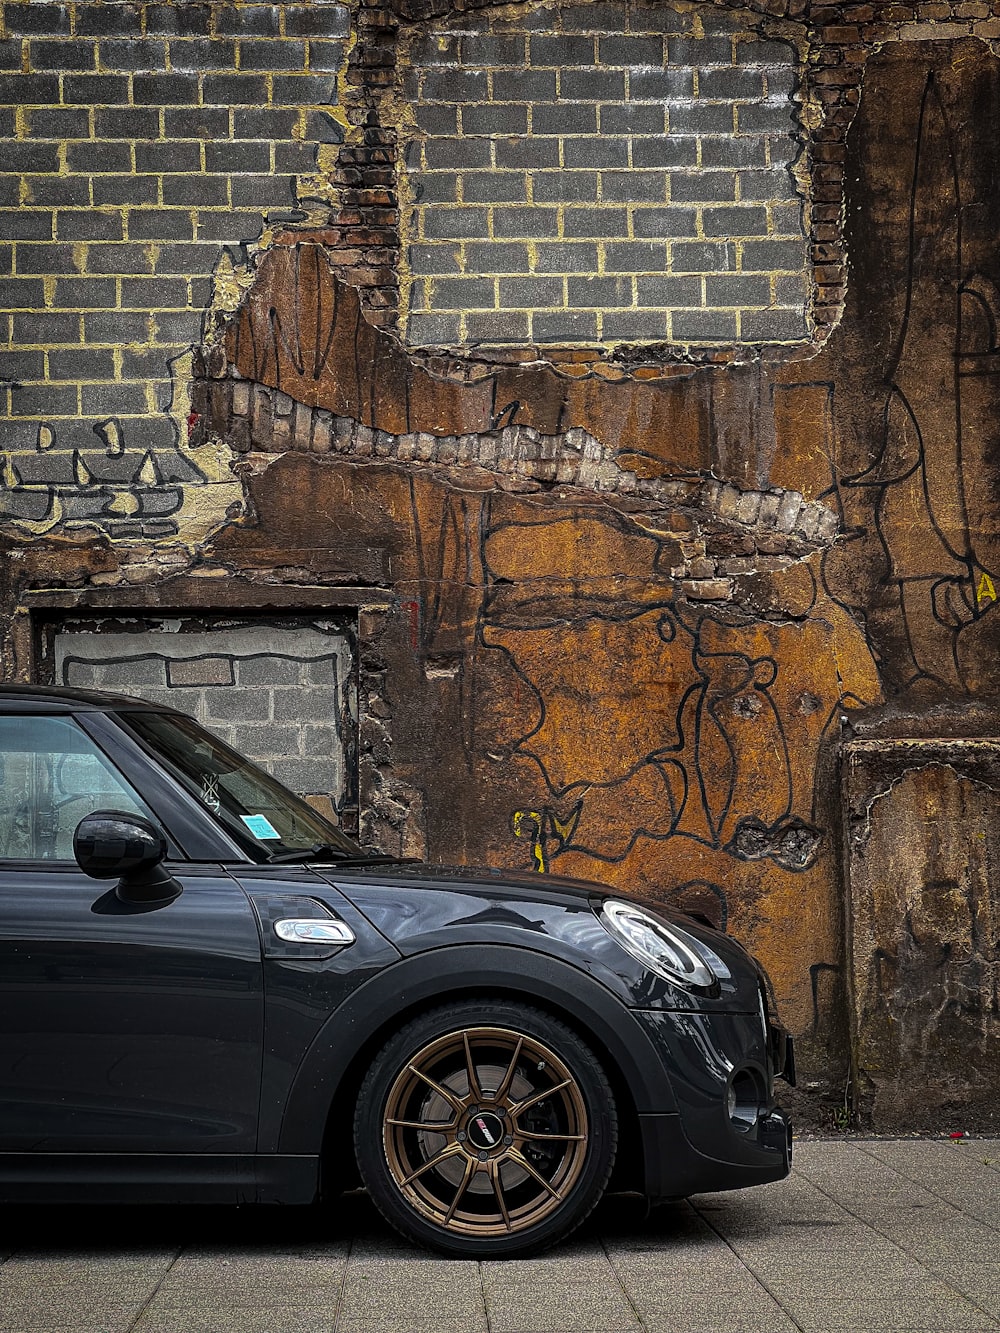 ein Auto, das vor einer Ziegelmauer mit Graffiti darauf geparkt ist